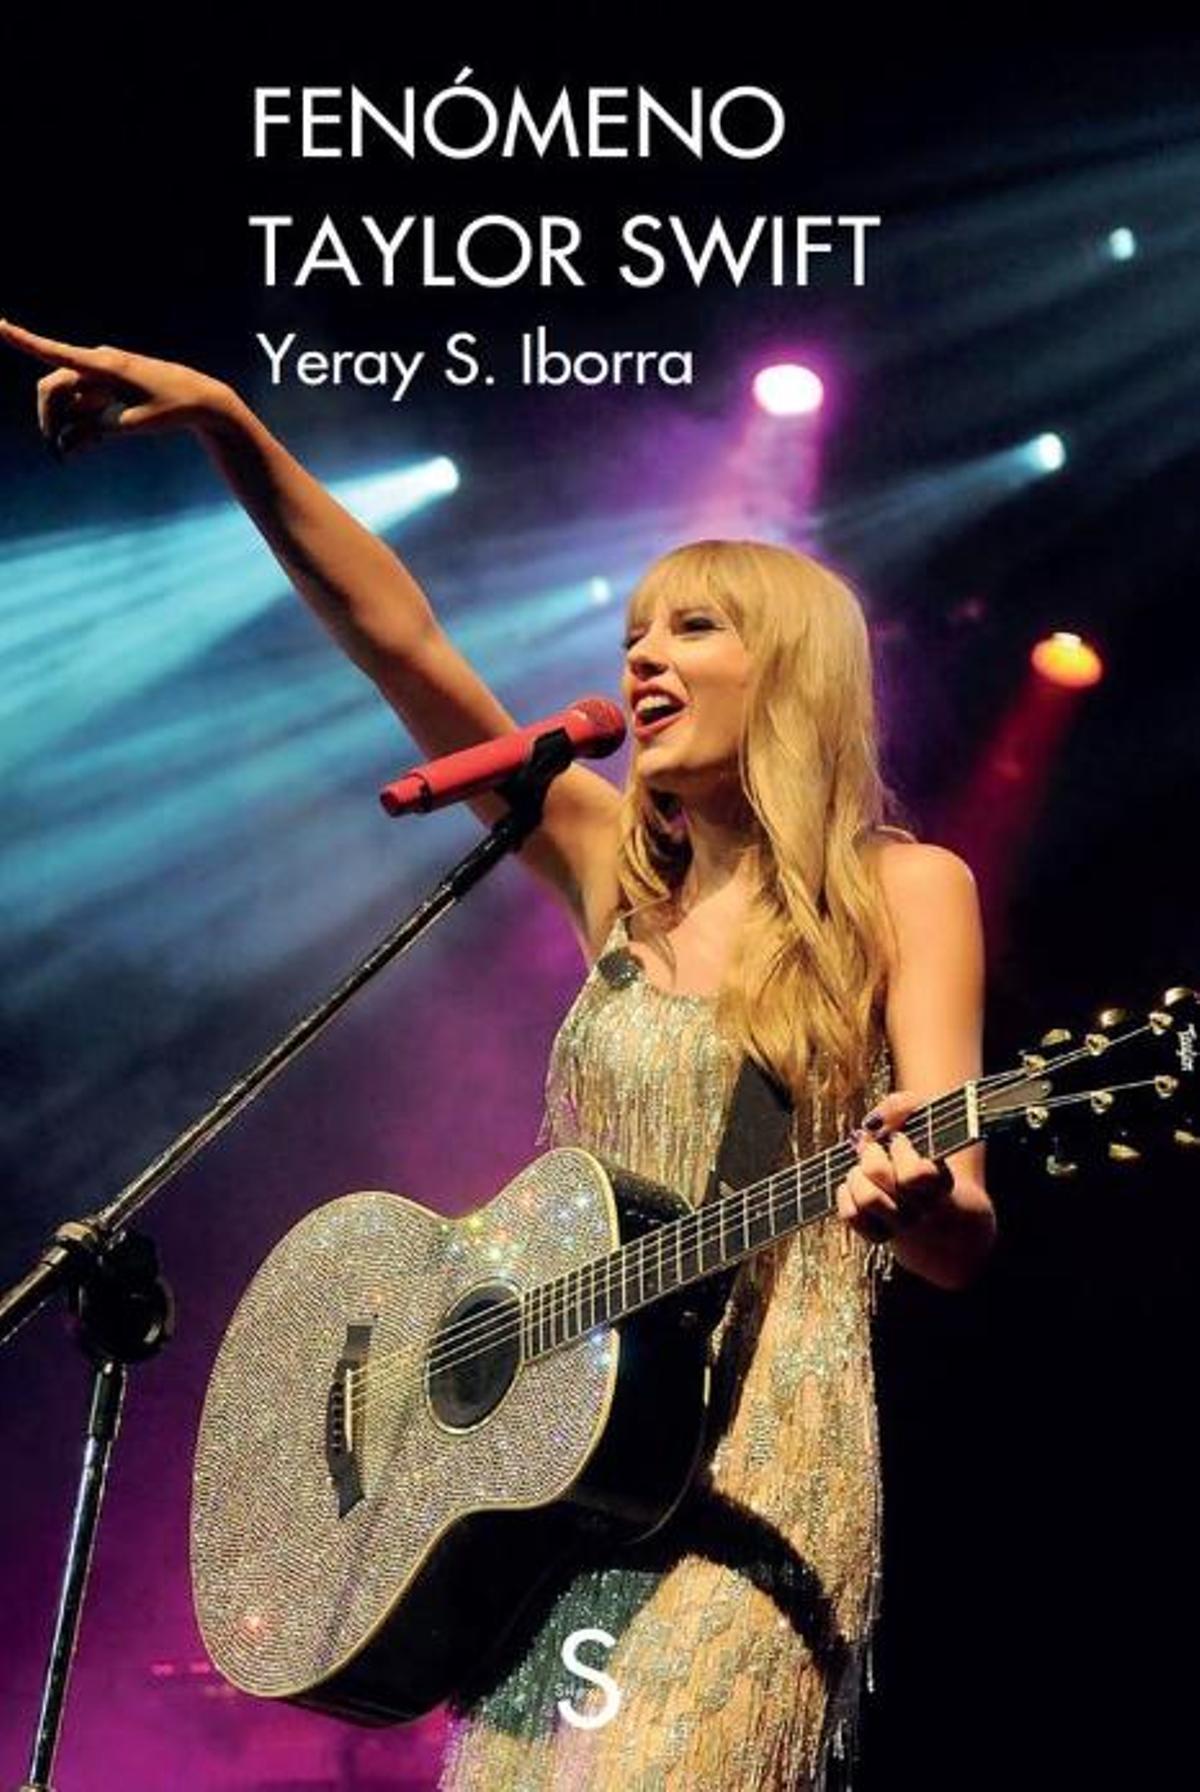 Fenómeno Taylor Swift, de Yeray S. Iborra